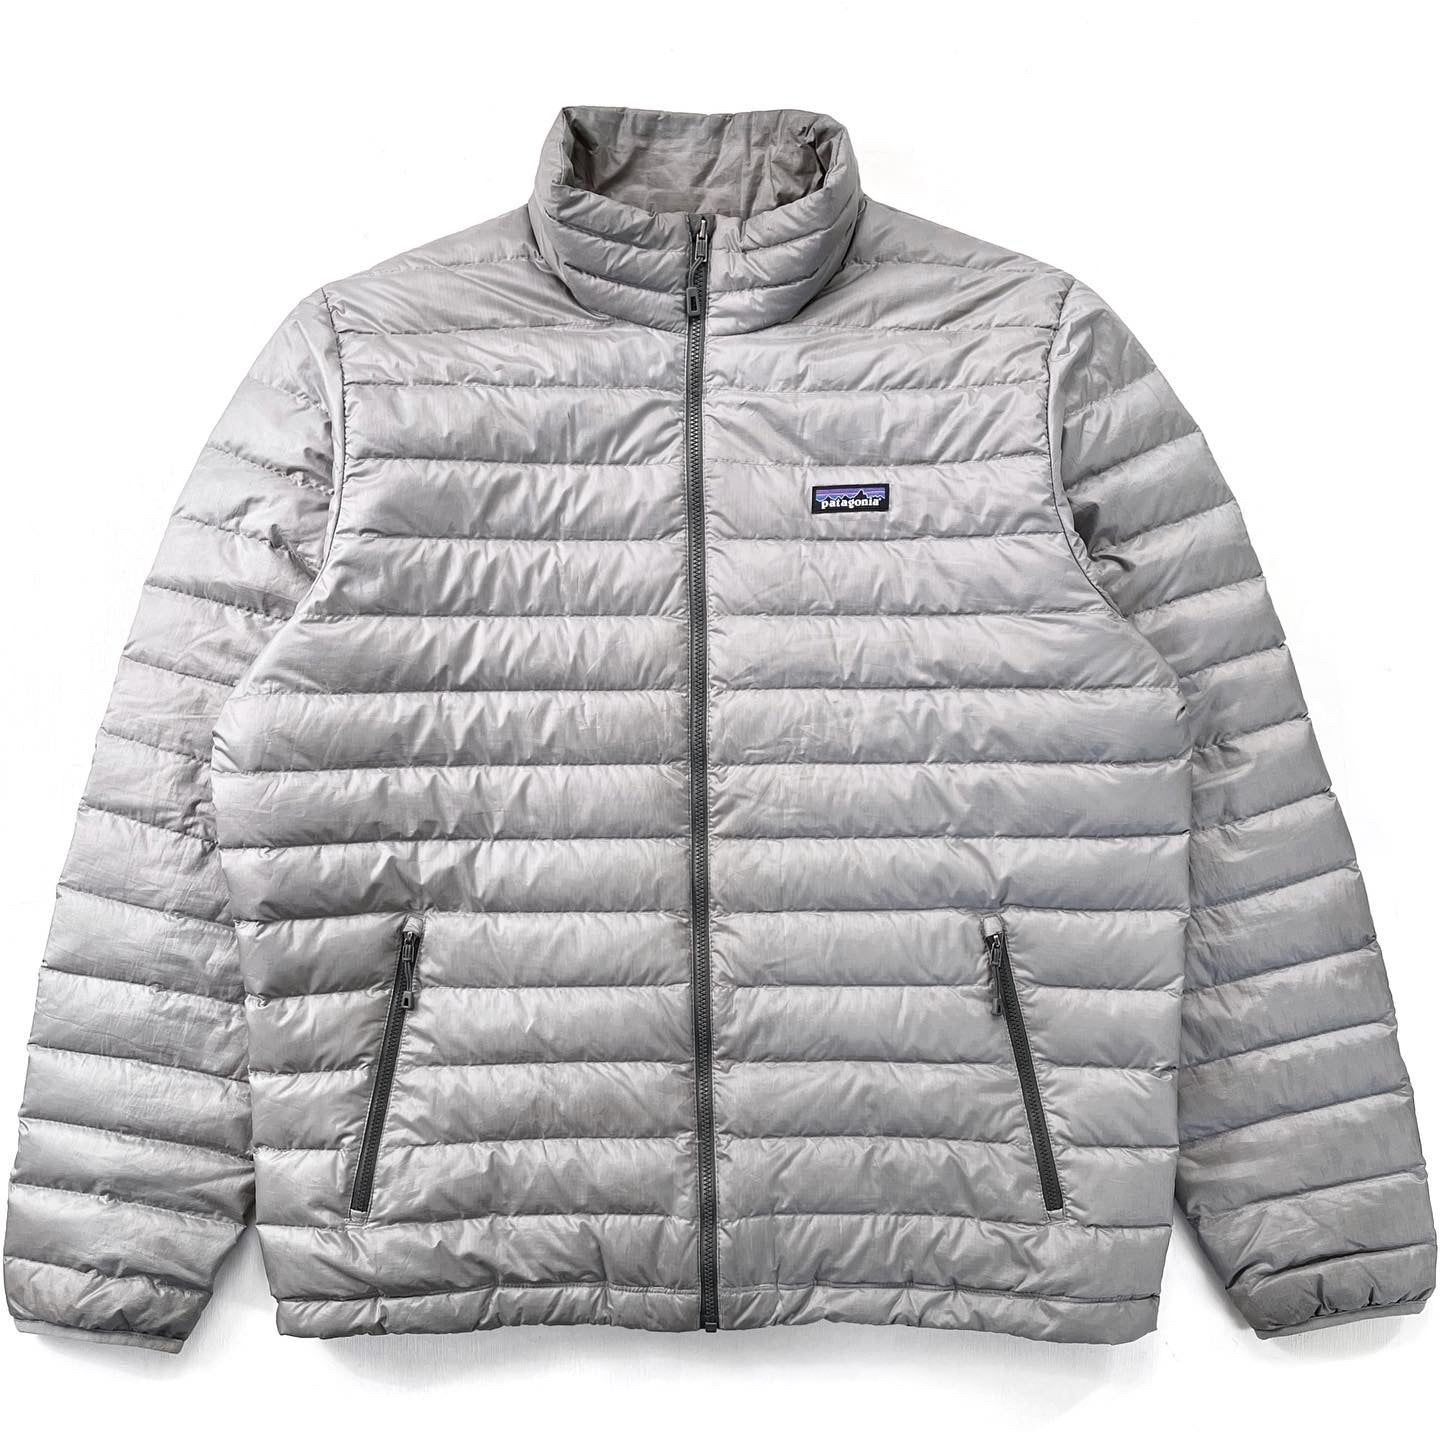 2015 Patagonia Mens Full-Zip Down Sweater, Light Grey (XL)